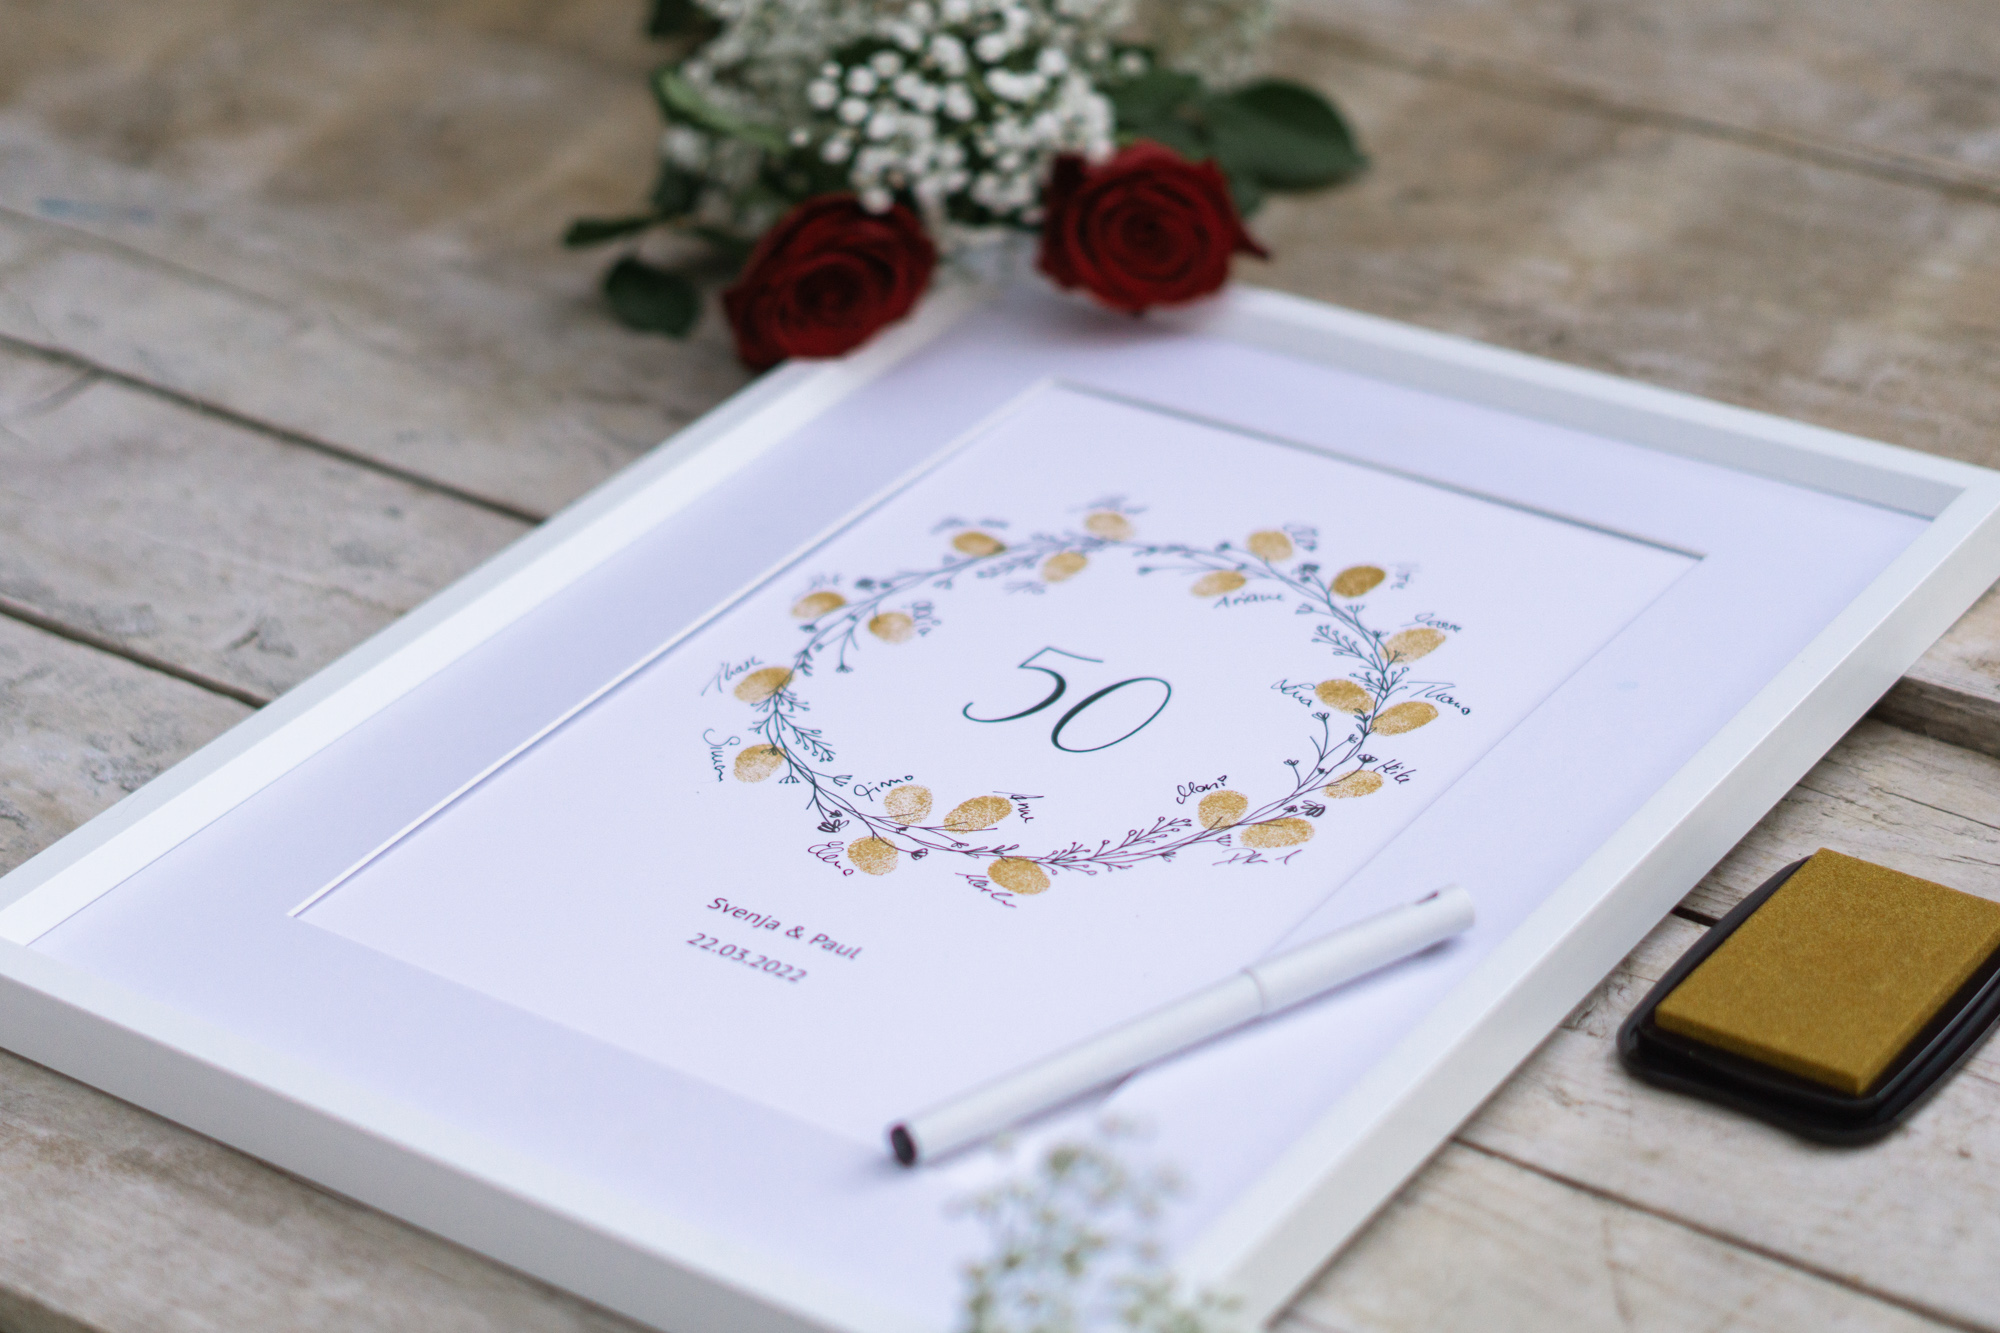 Zubehör für Weddingtree Fingerabdruck Gäastebuch als Geschenk Idee zu 50 Jahre Hochzeit Goldhochzeit Ehe Jubiläum